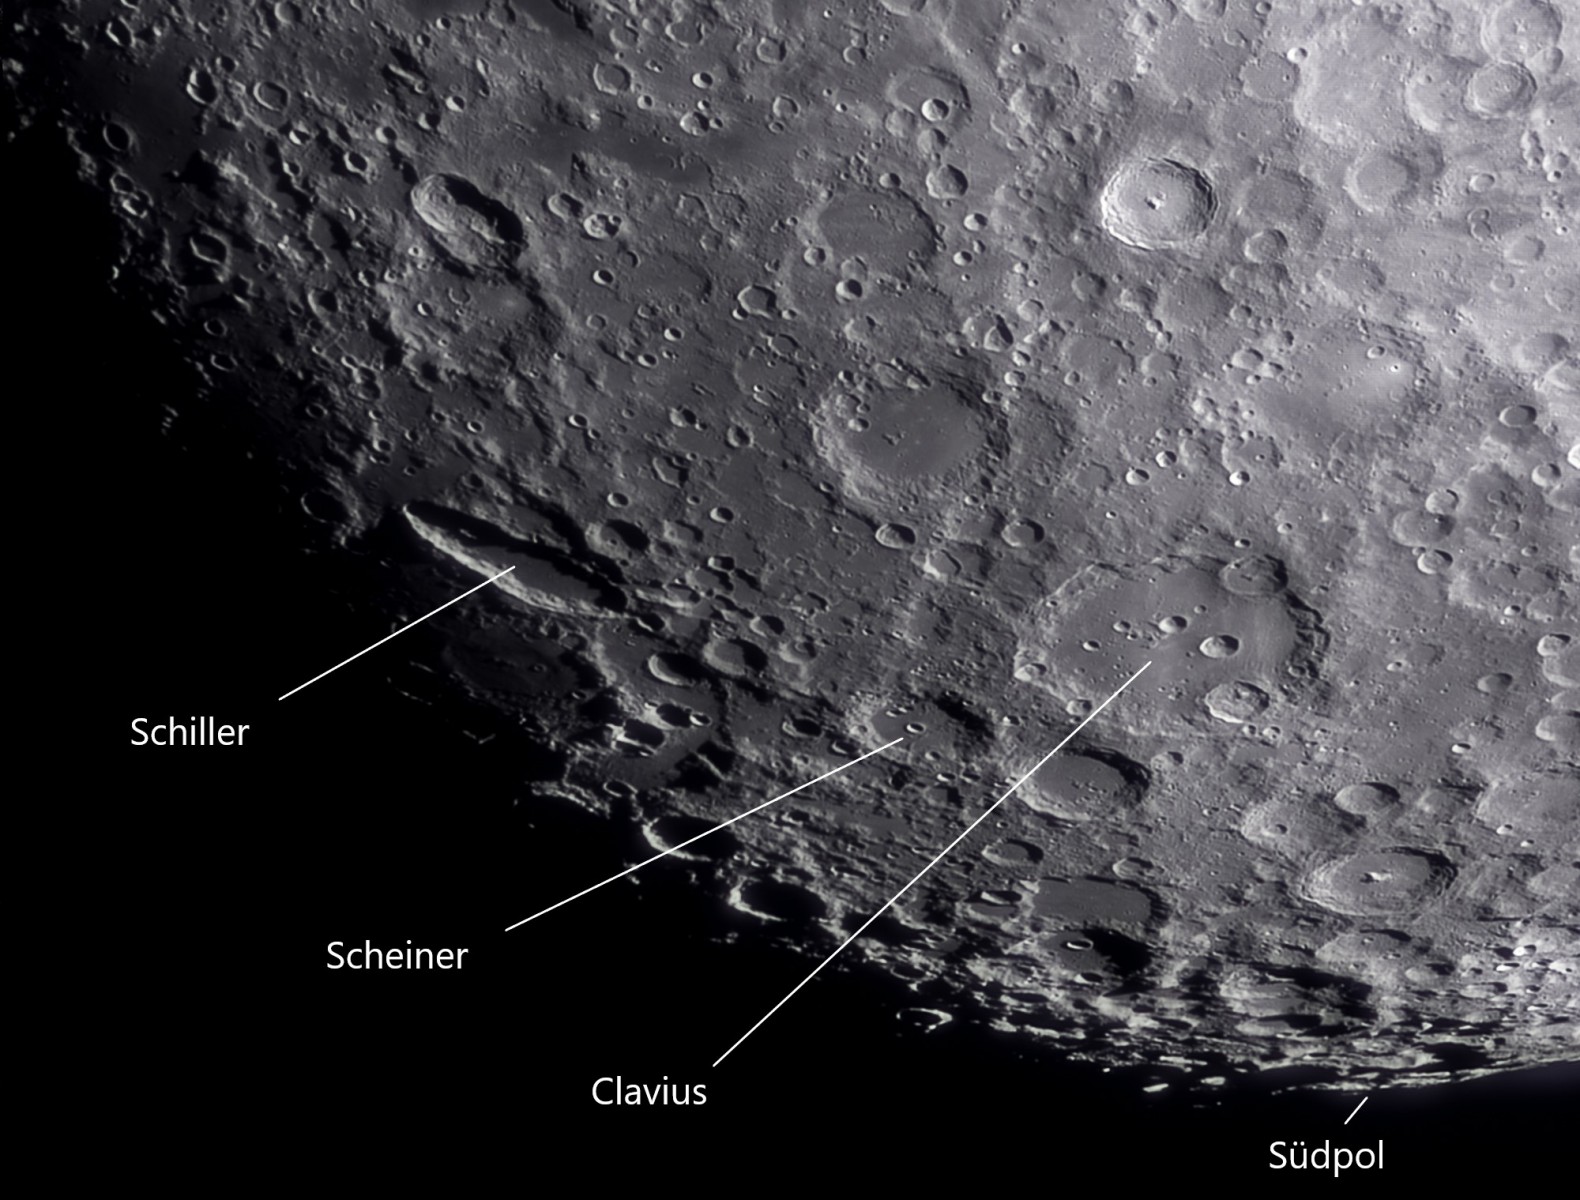 Detailaufnahme Mond Südpol mit ASI183Pro am 100/1500mm Refraktor